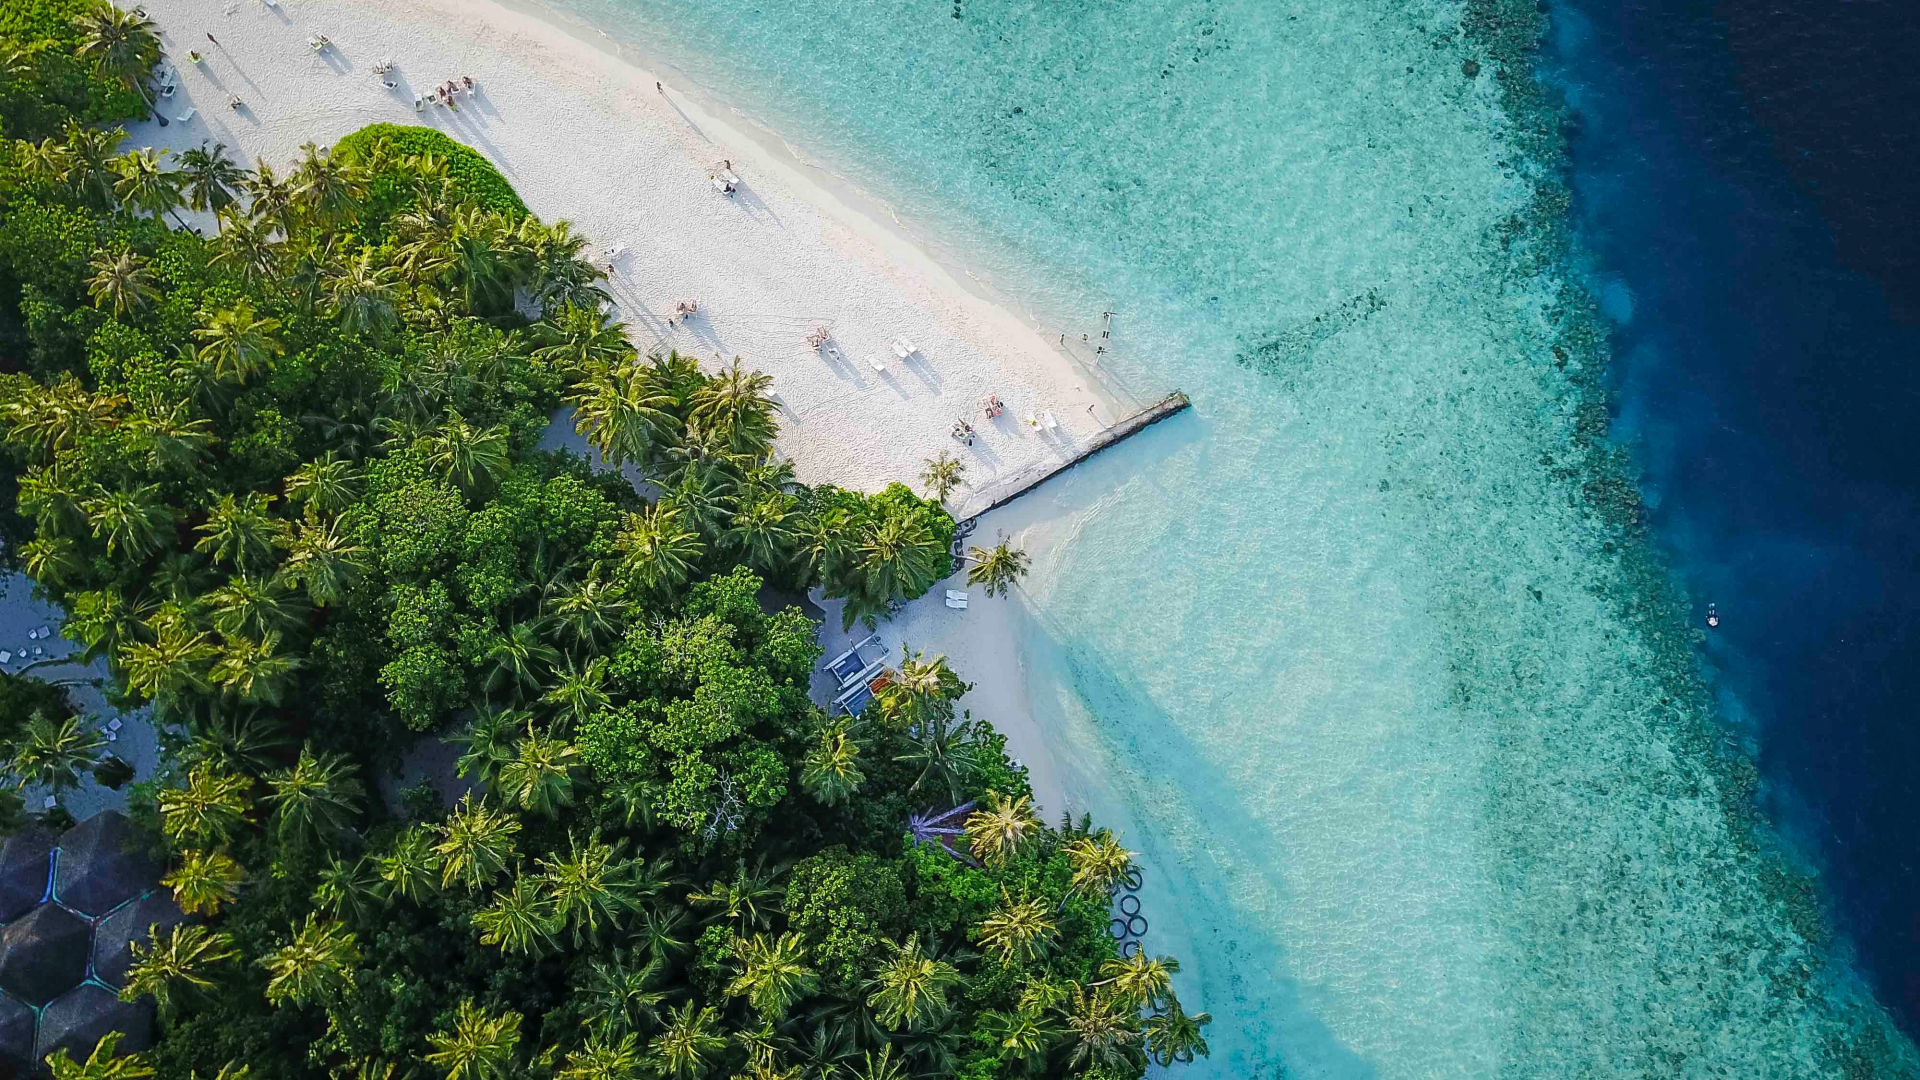 Download Wallpaper 1920x1080 Maldives Island Tropical Aerial View Beach Full Hd Hdtv Fhd